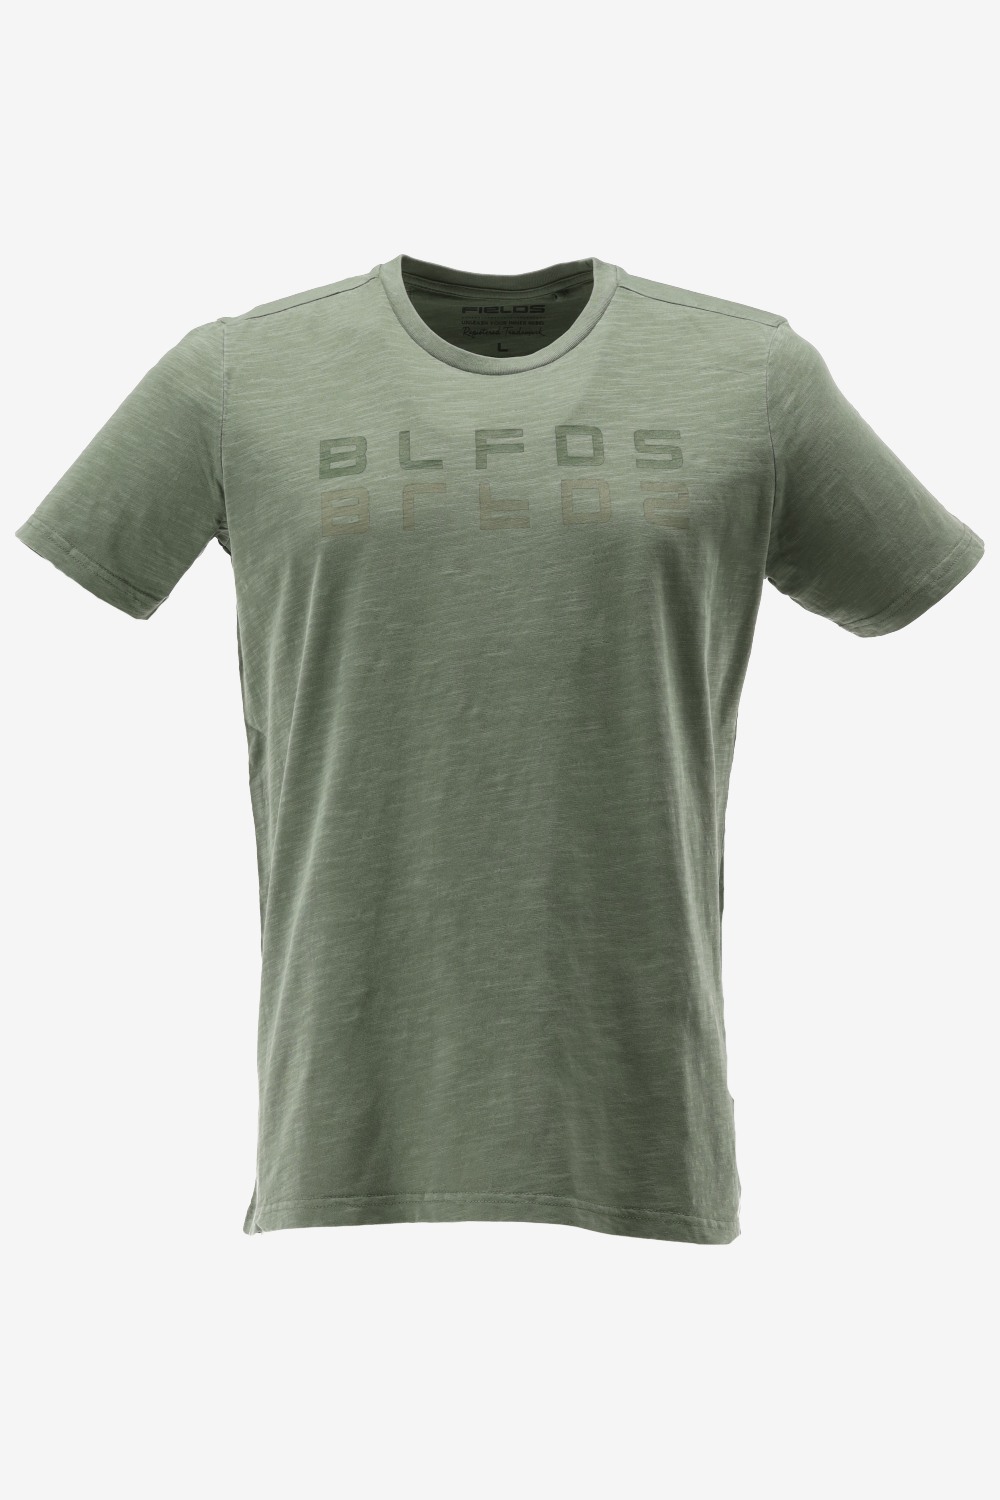 BlueFields T-shirt 